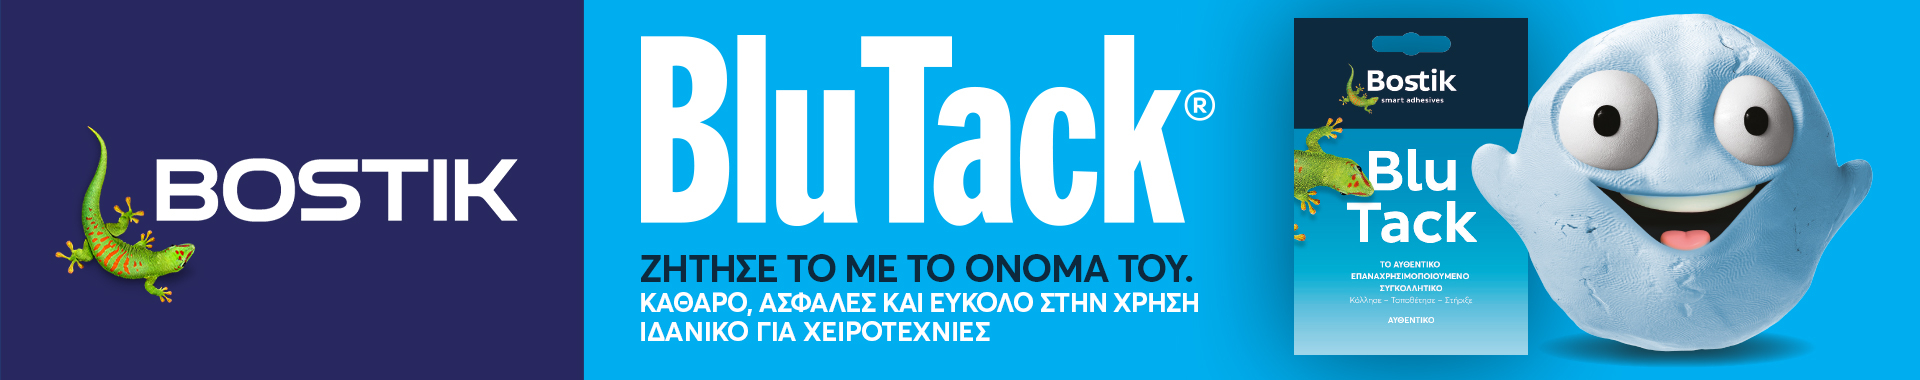 Bostik DIY Greece homepage banner desktop 3